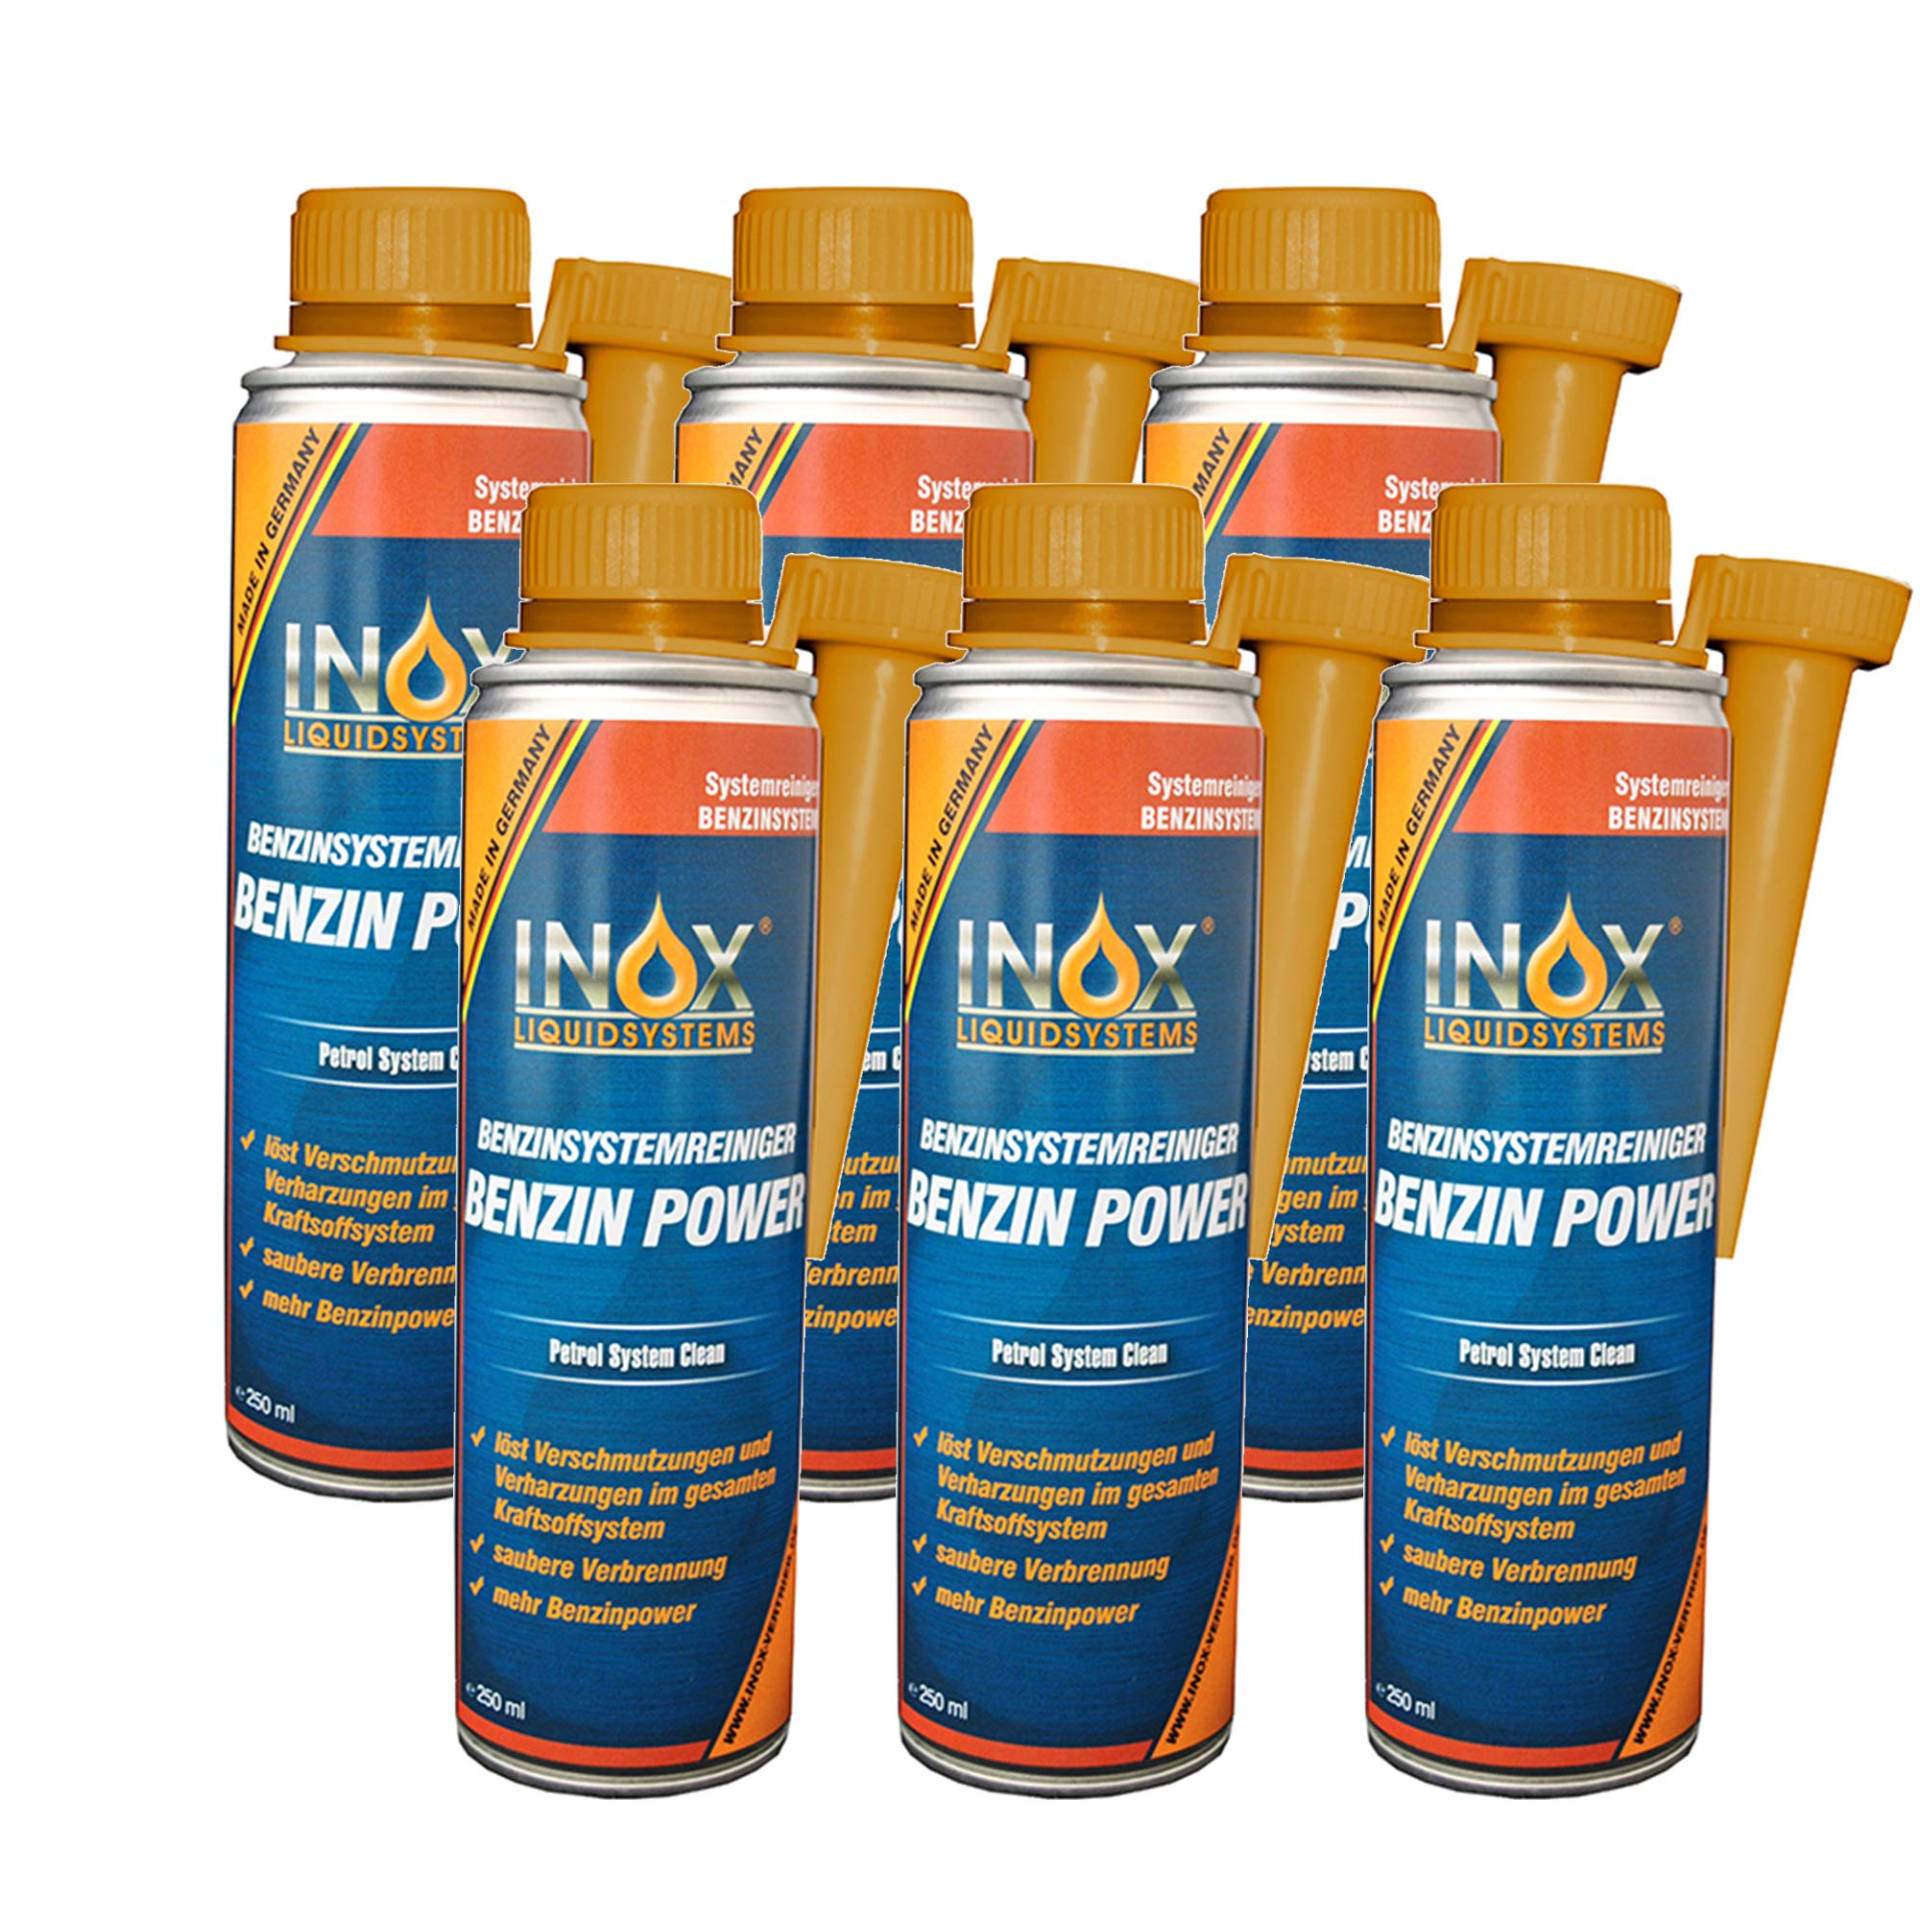 INOX® Benzin Power Additiv, 6 x 250ml - Benzinsystemreiniger Zusatz für alle Normal- und Superbenziner von INOX-LIQUIDSYSTEMS